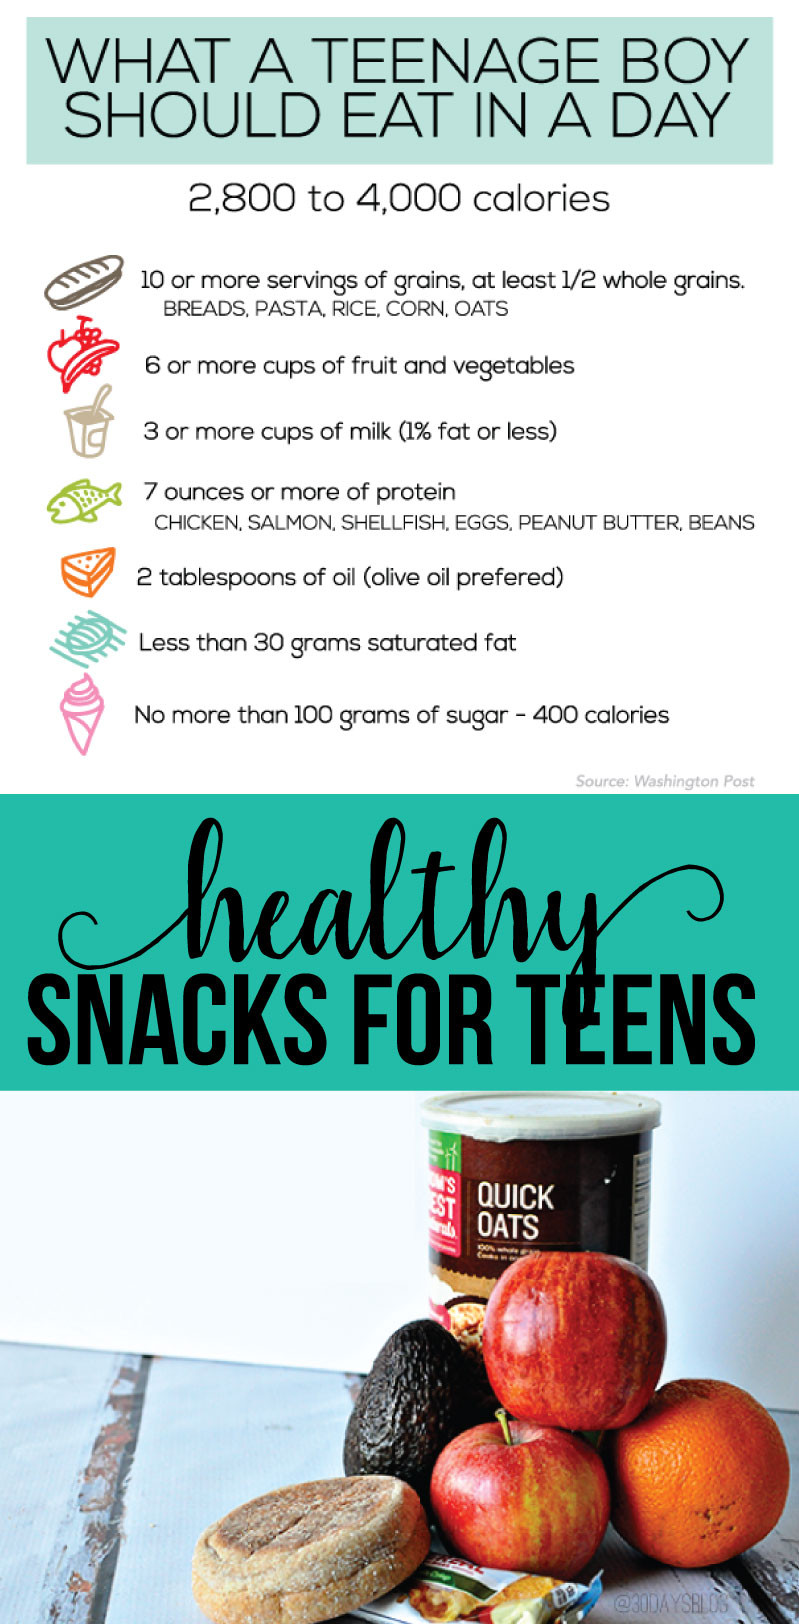 Healthy Snacks For Teens
 Healthy Snacks for Teens